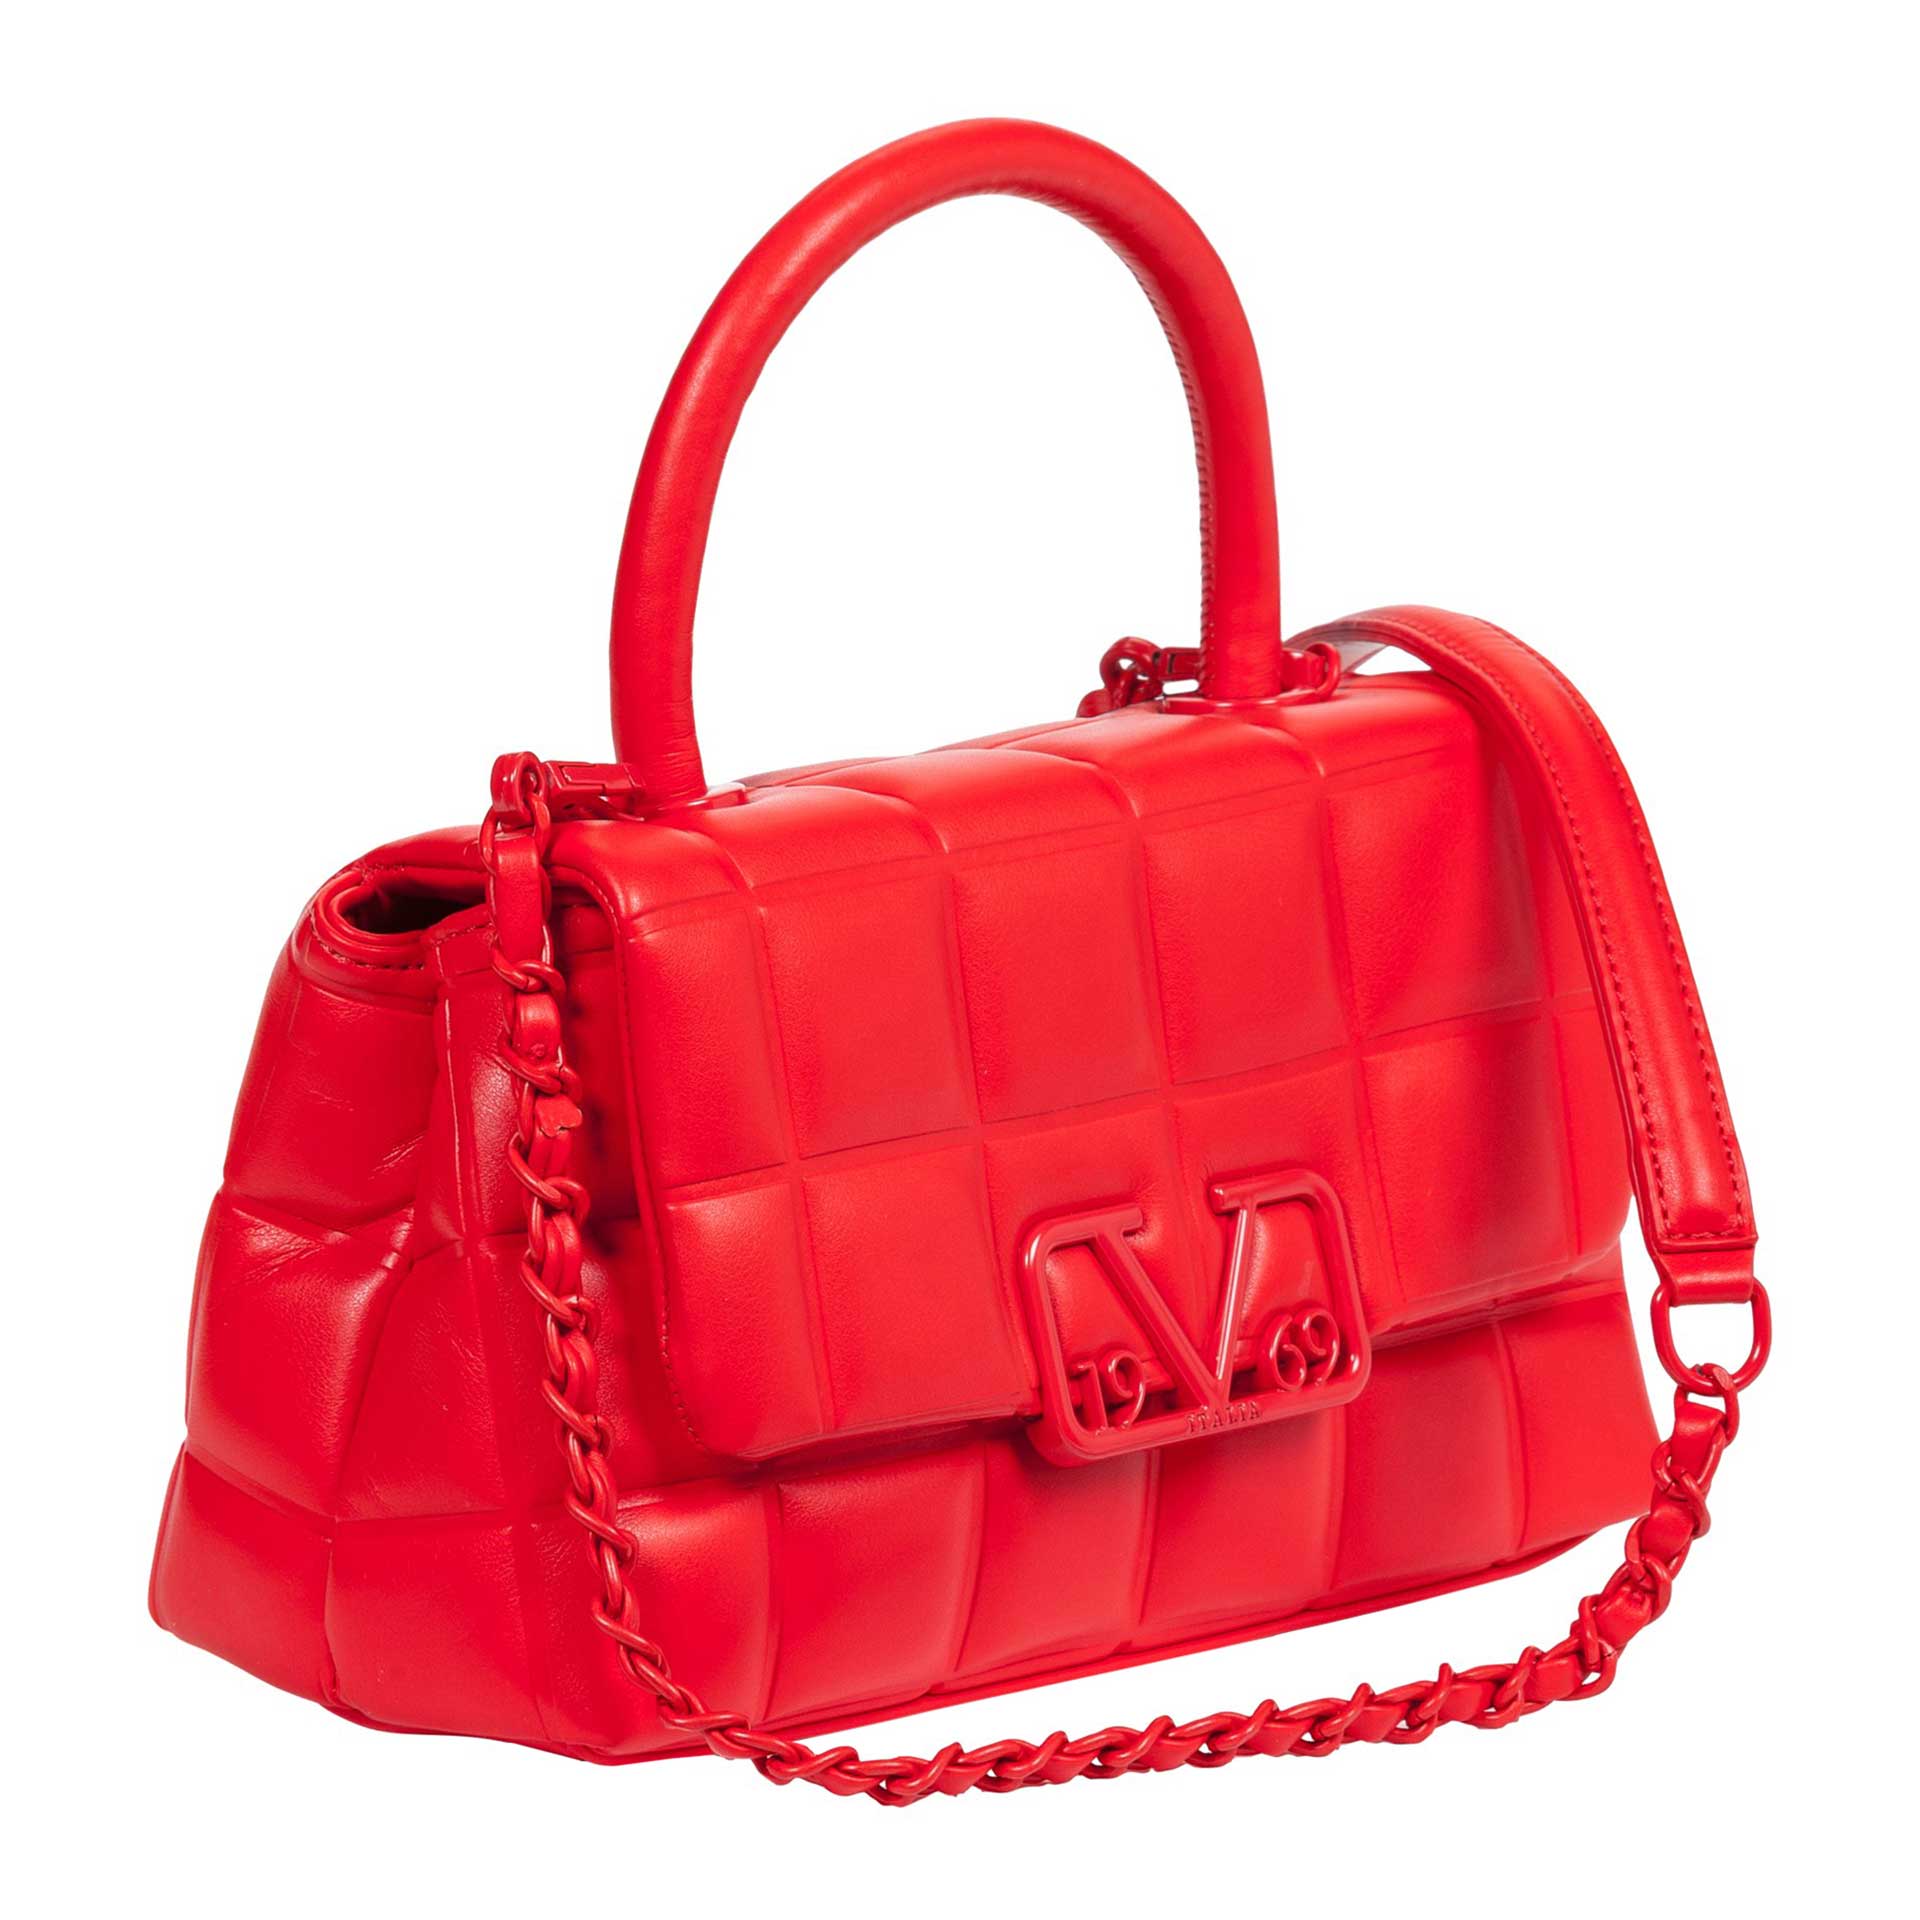 19V69 Italia by Versace Raindow Handtasche red